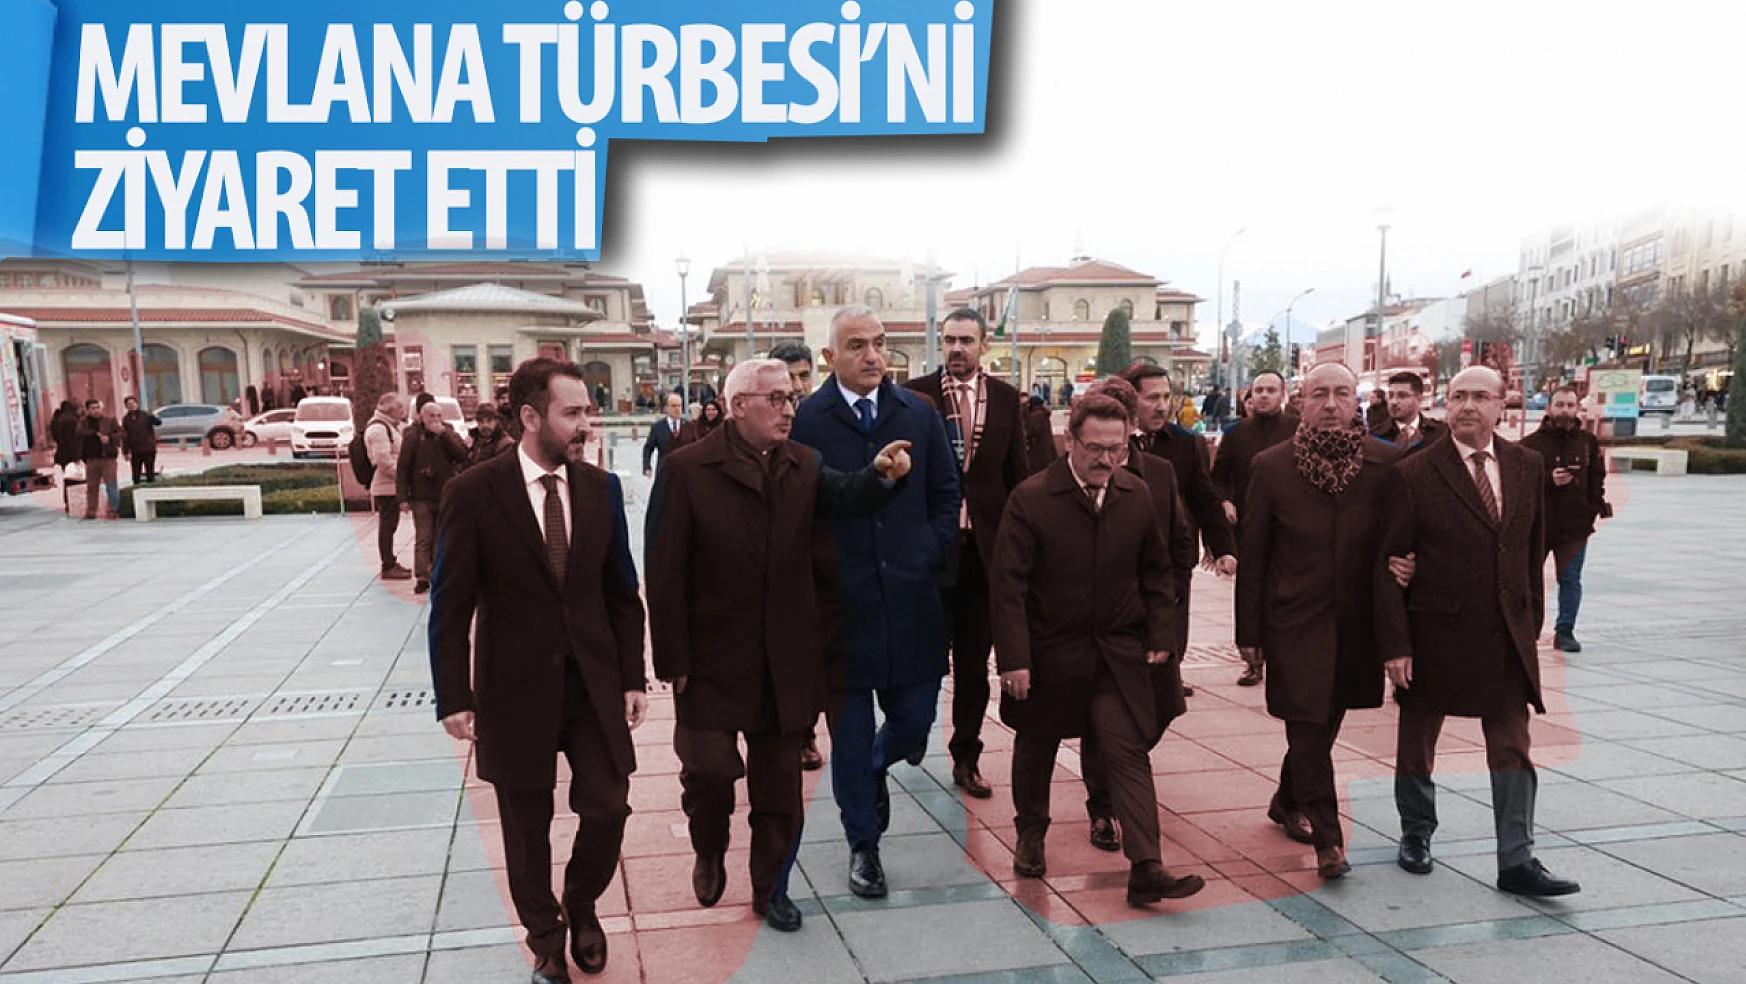 Kültür ve Turizm Bakanı Mehmet Nuri Ersoy, Mevlana Türbesi'nde